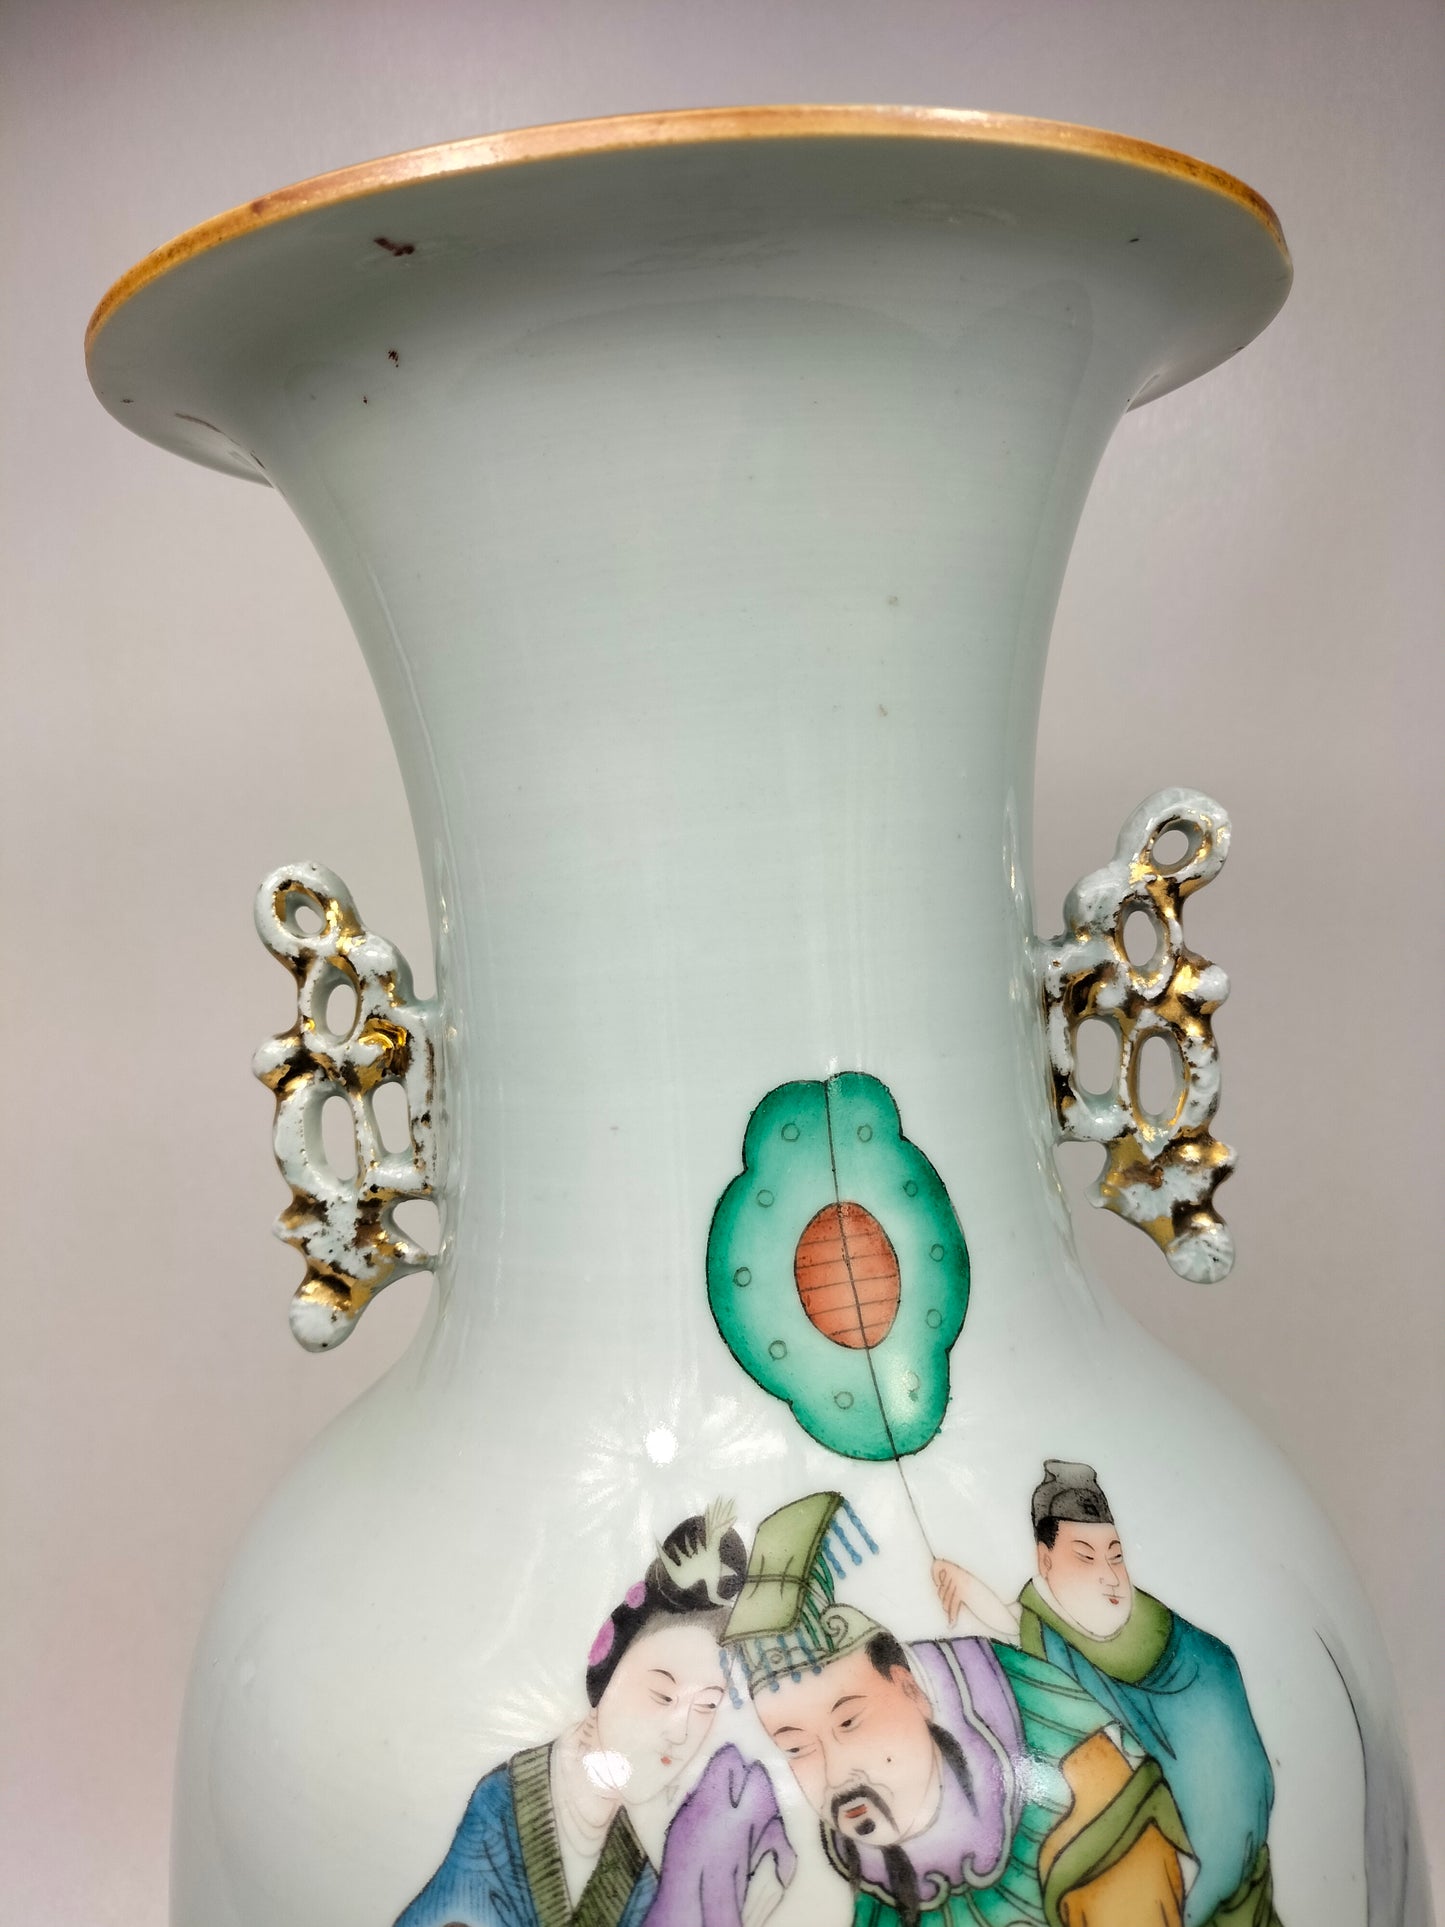 مزهرية صينية أثرية كبيرة مزينة بمنظر إمبراطوري // فترة الجمهورية (1912-1949)